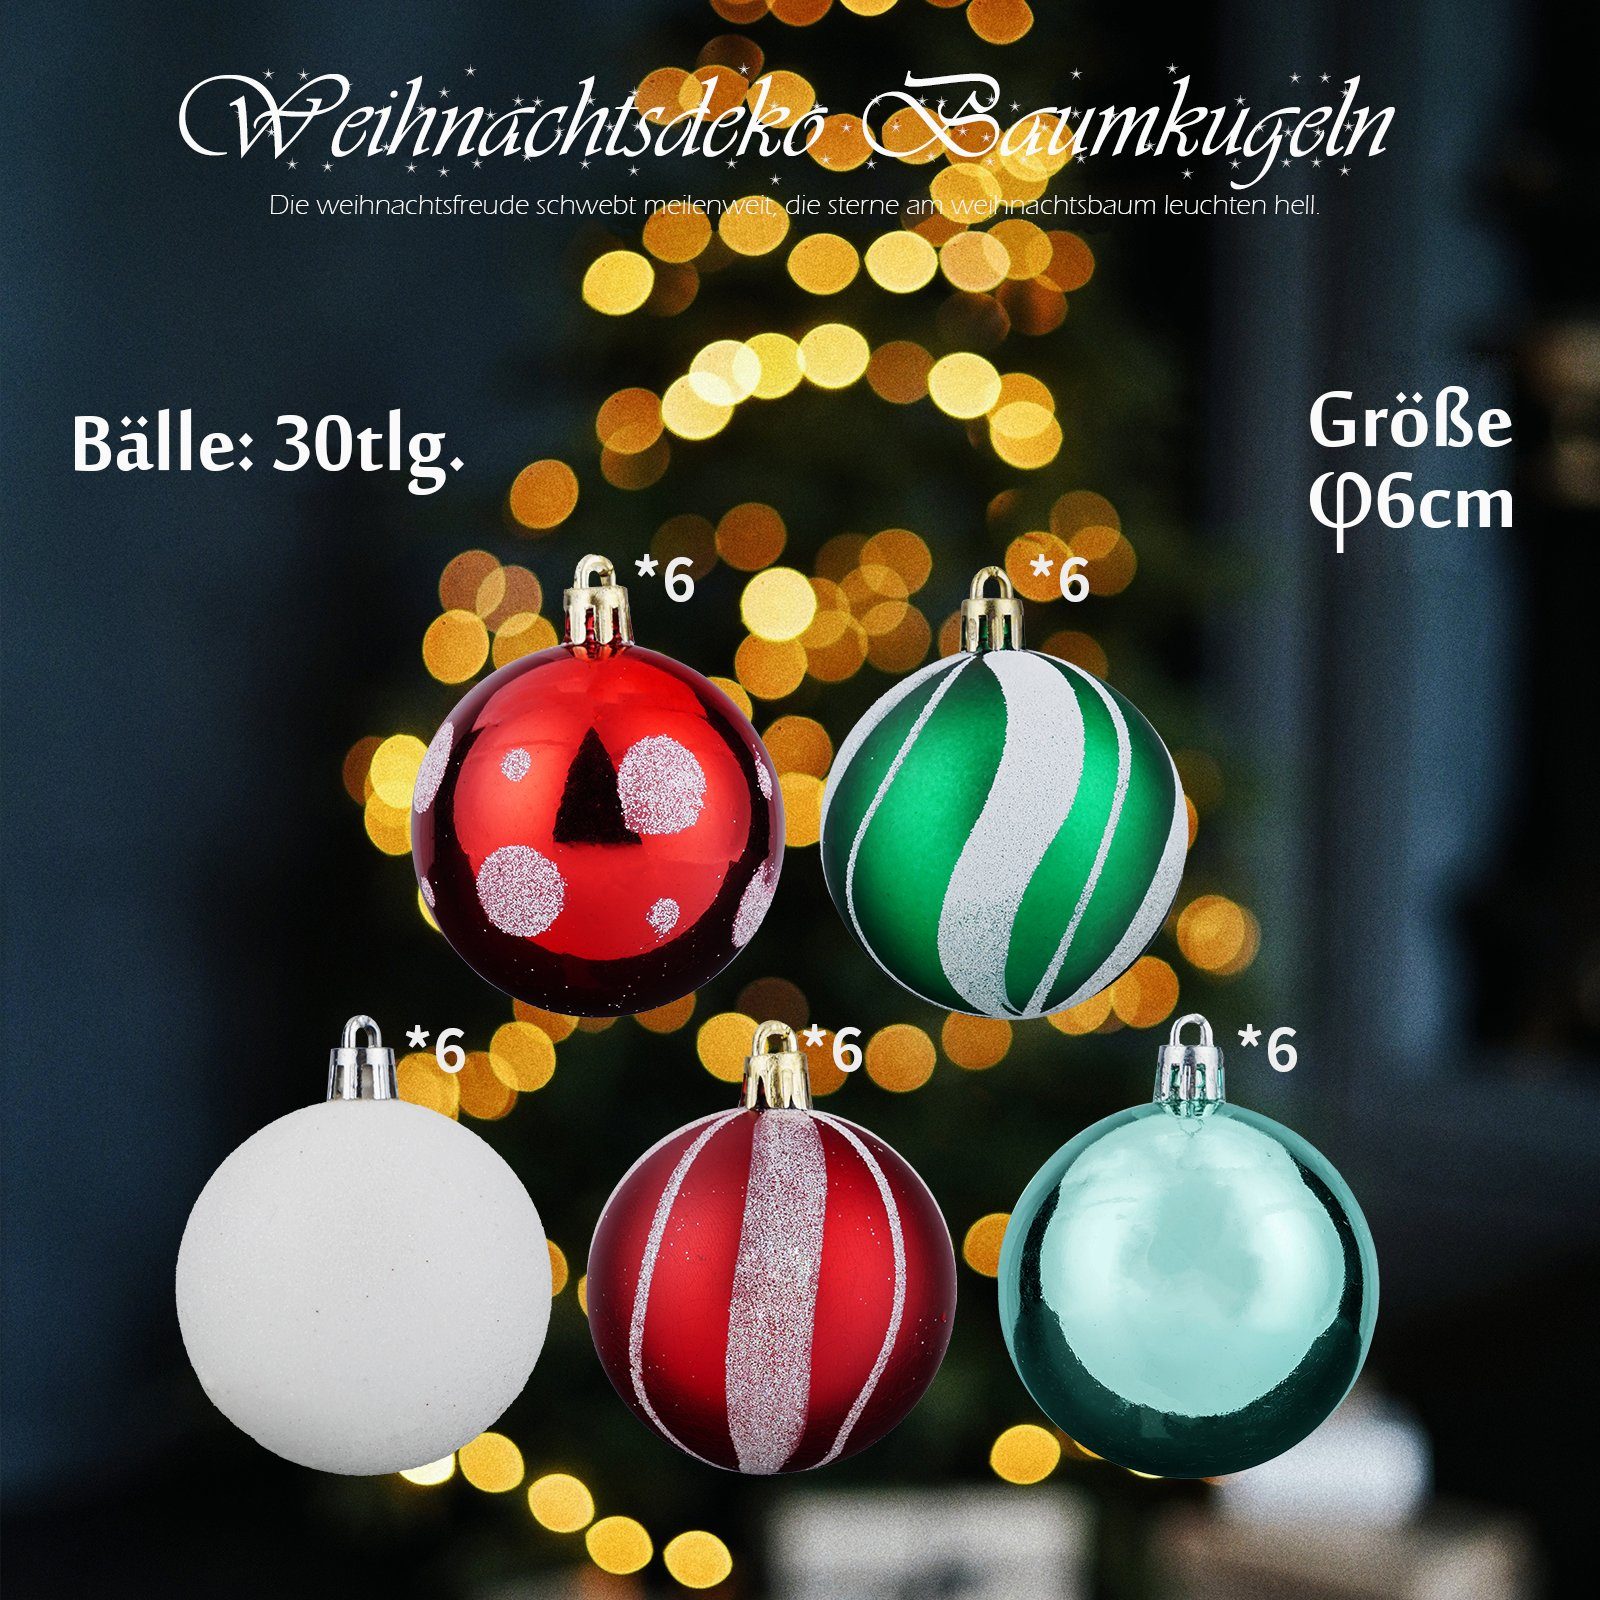 KAHOO Weihnachtsbaumkugel 30 bis 30tlg.-1 Ø6cm Weihnachtskugel, 103tlg. Christbaumschmuck